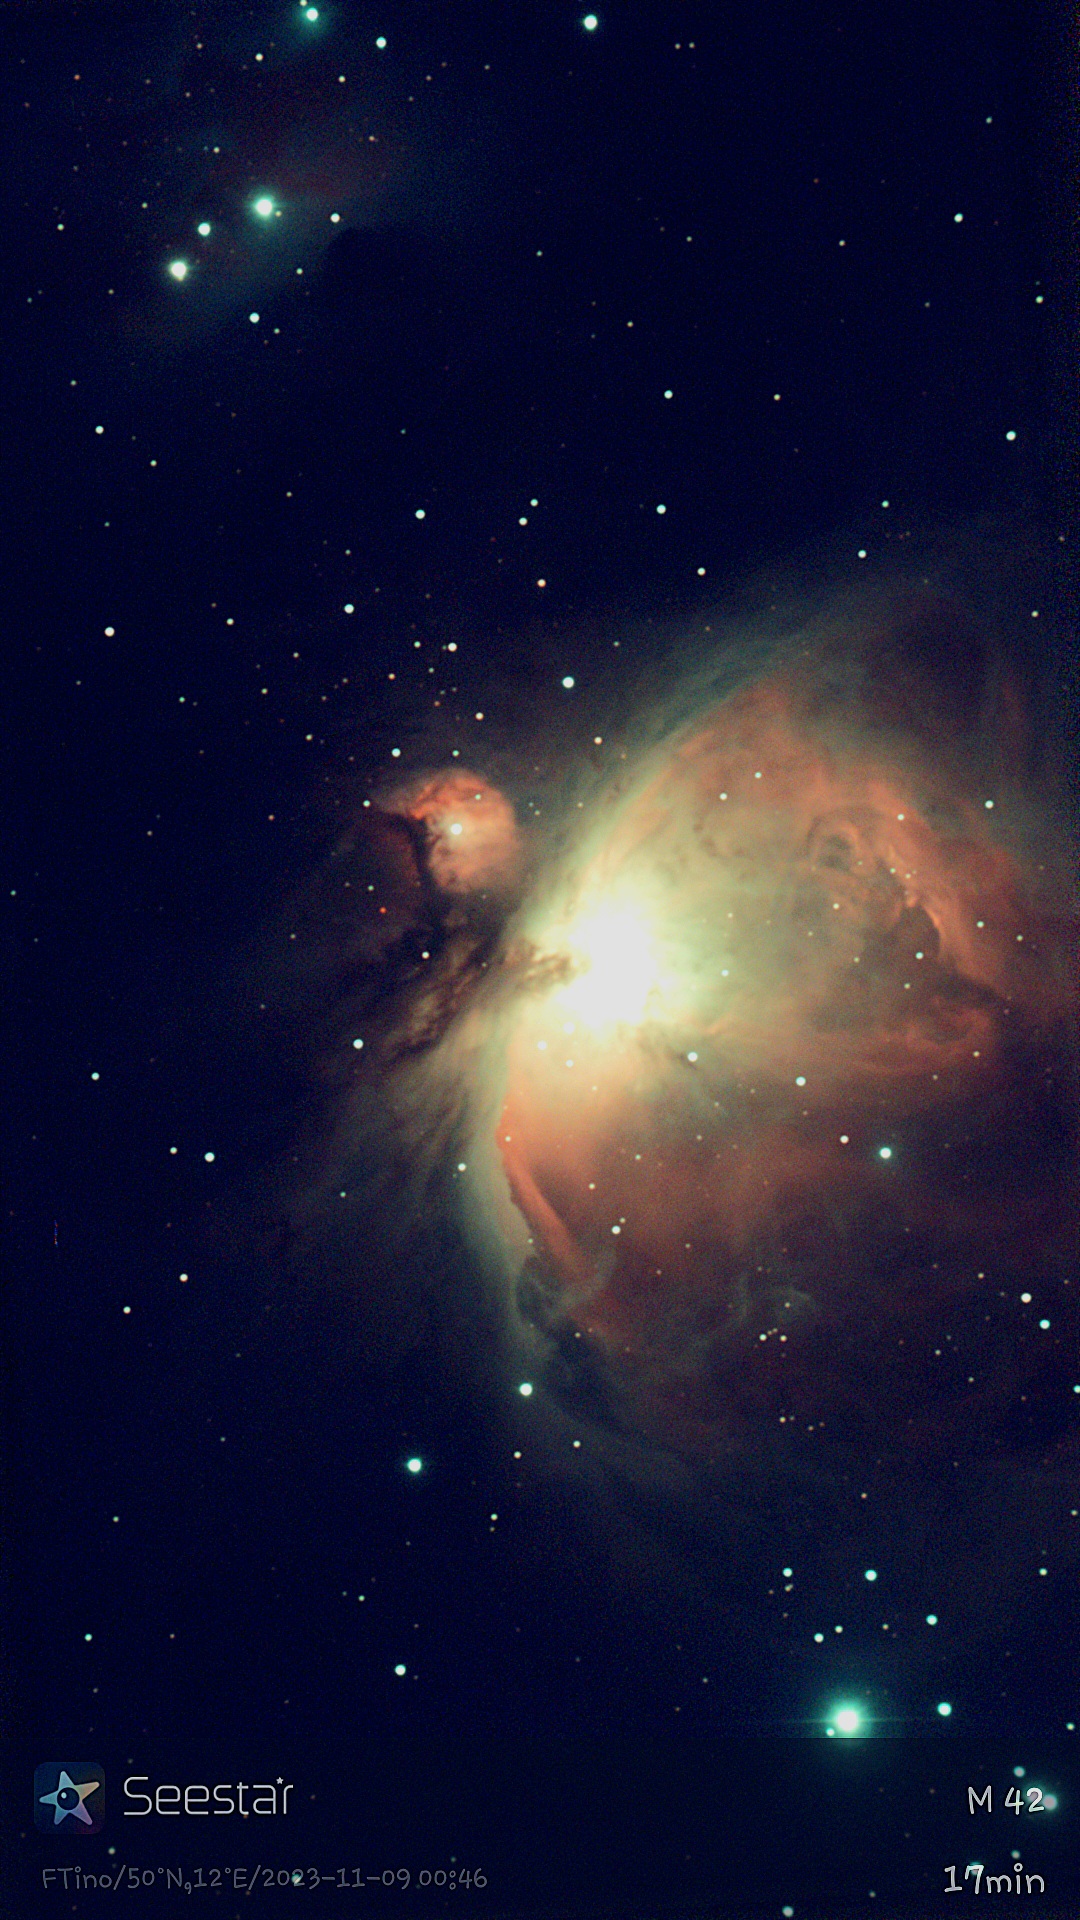 M42 mit dem Seestar